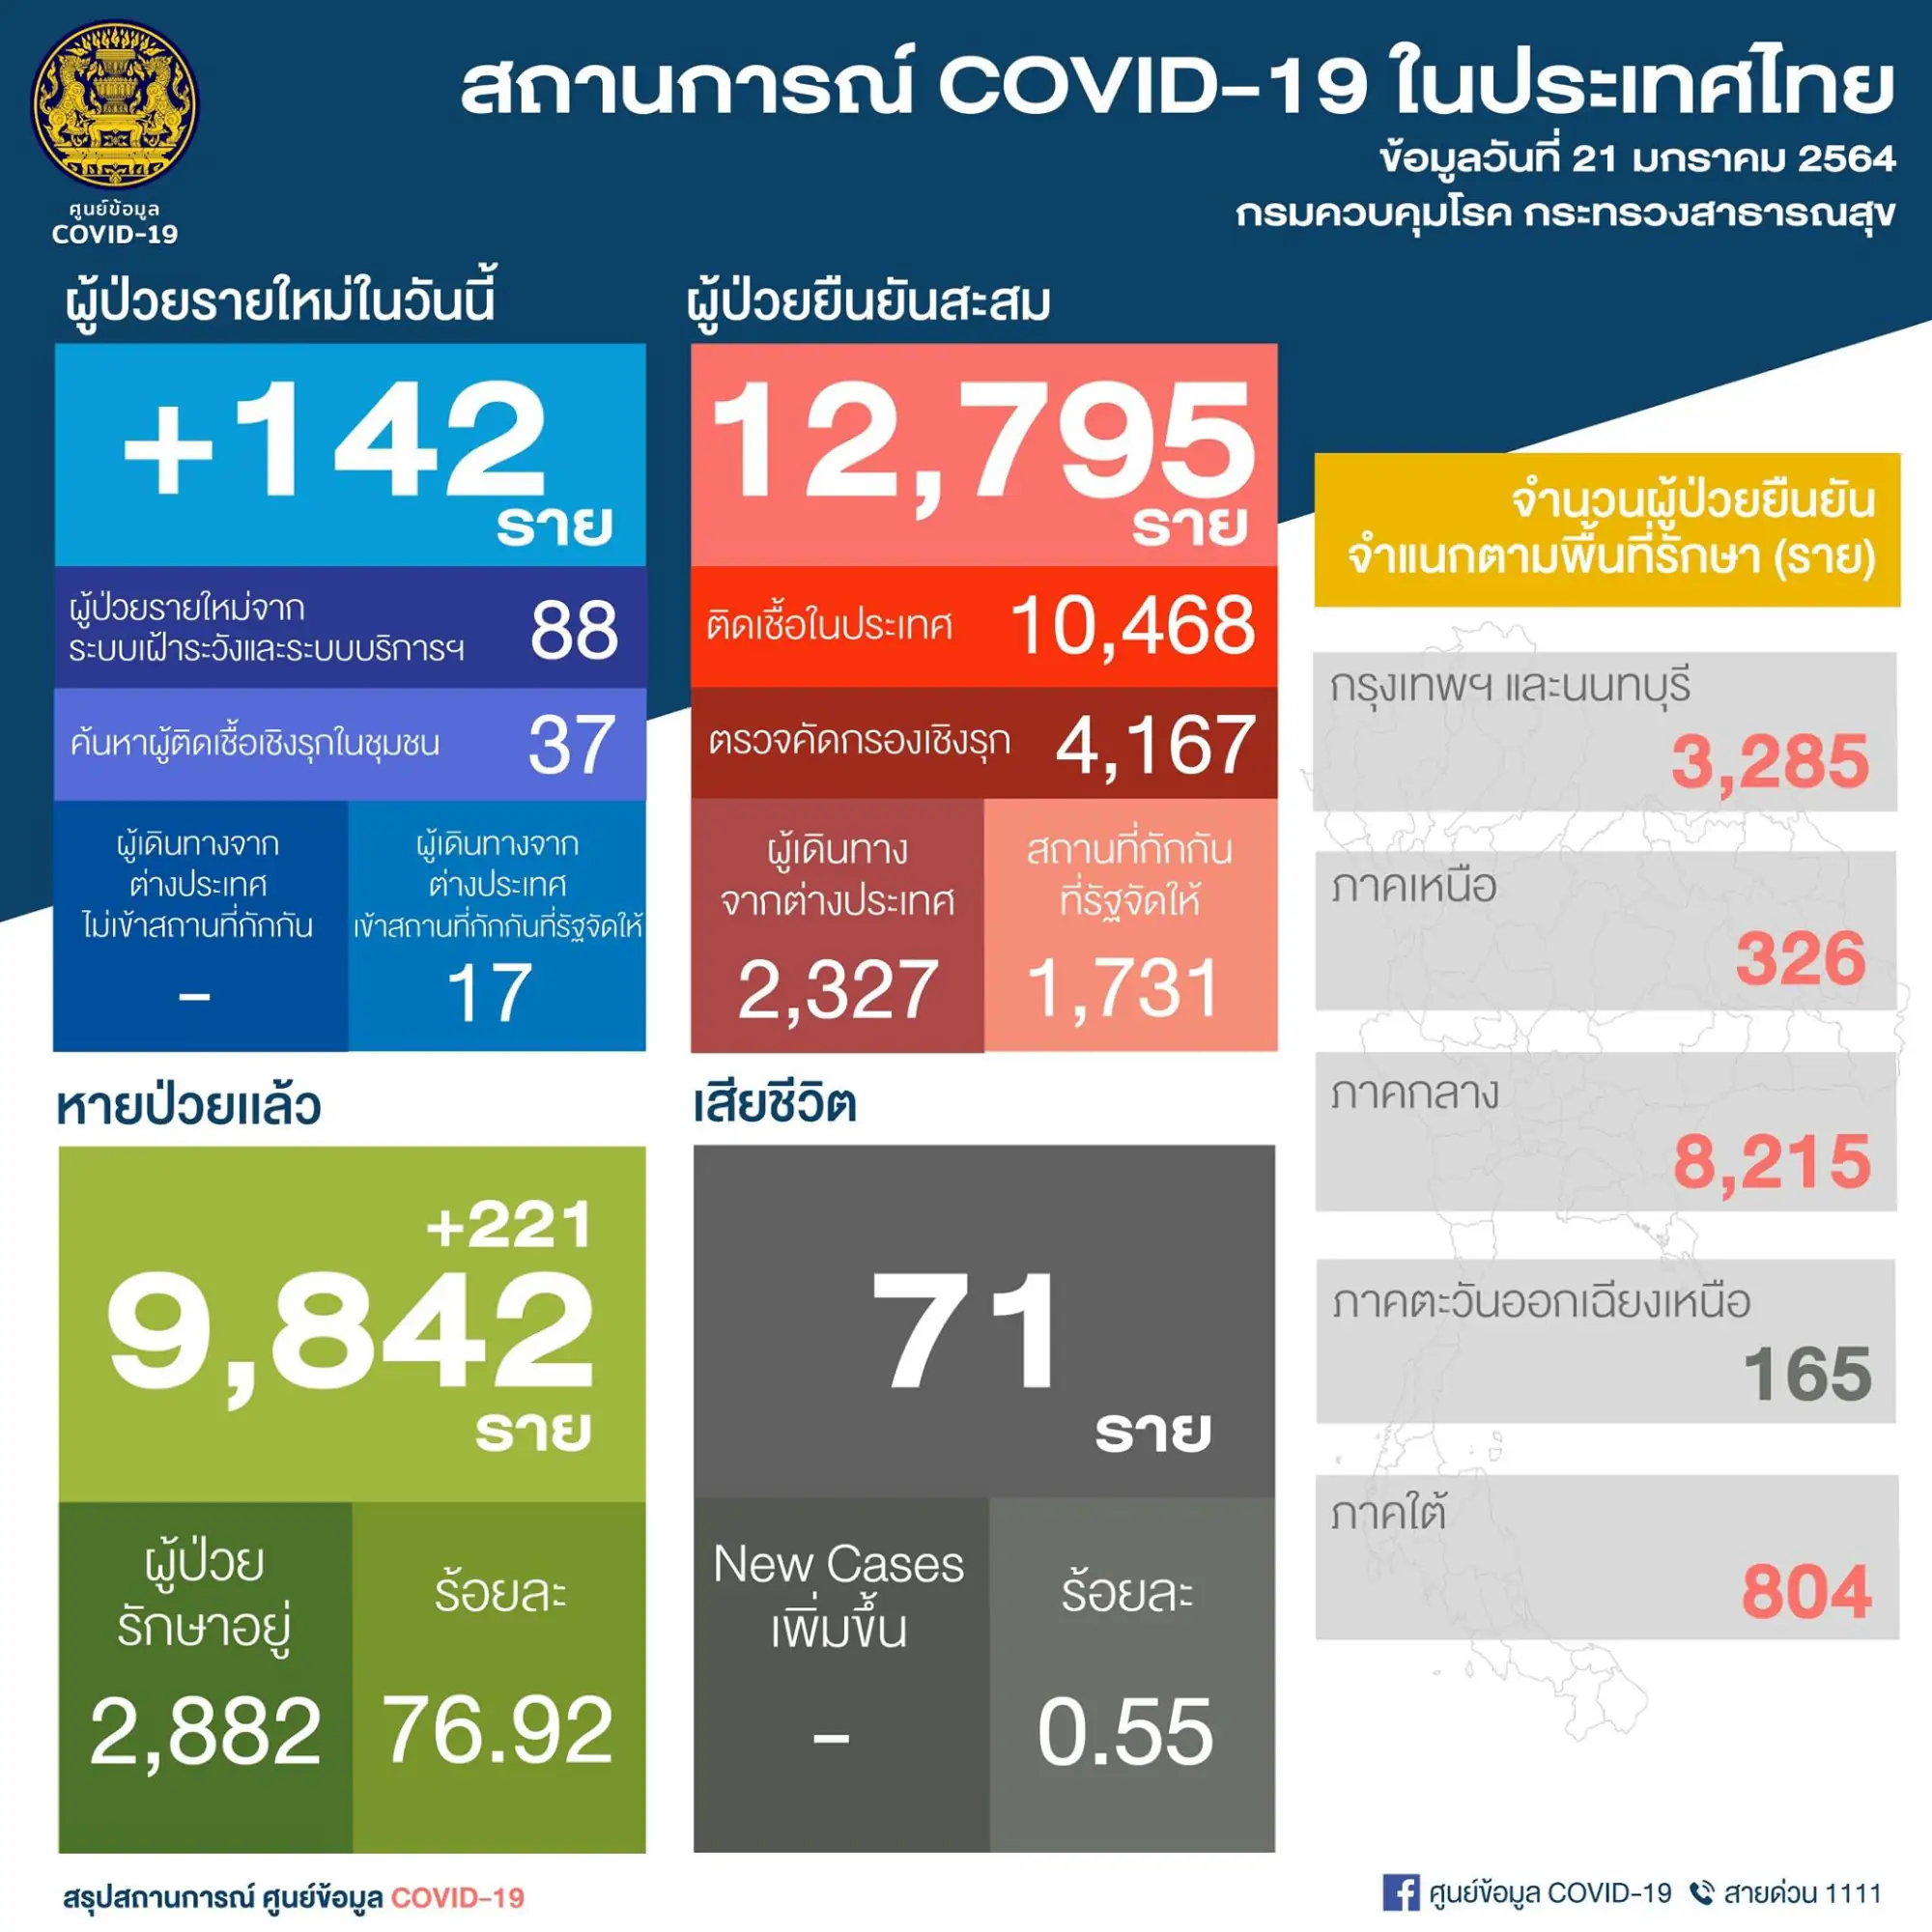 泰国疫情21日新增142例 （图片来源：PR Thai Government 脸书粉丝专页）